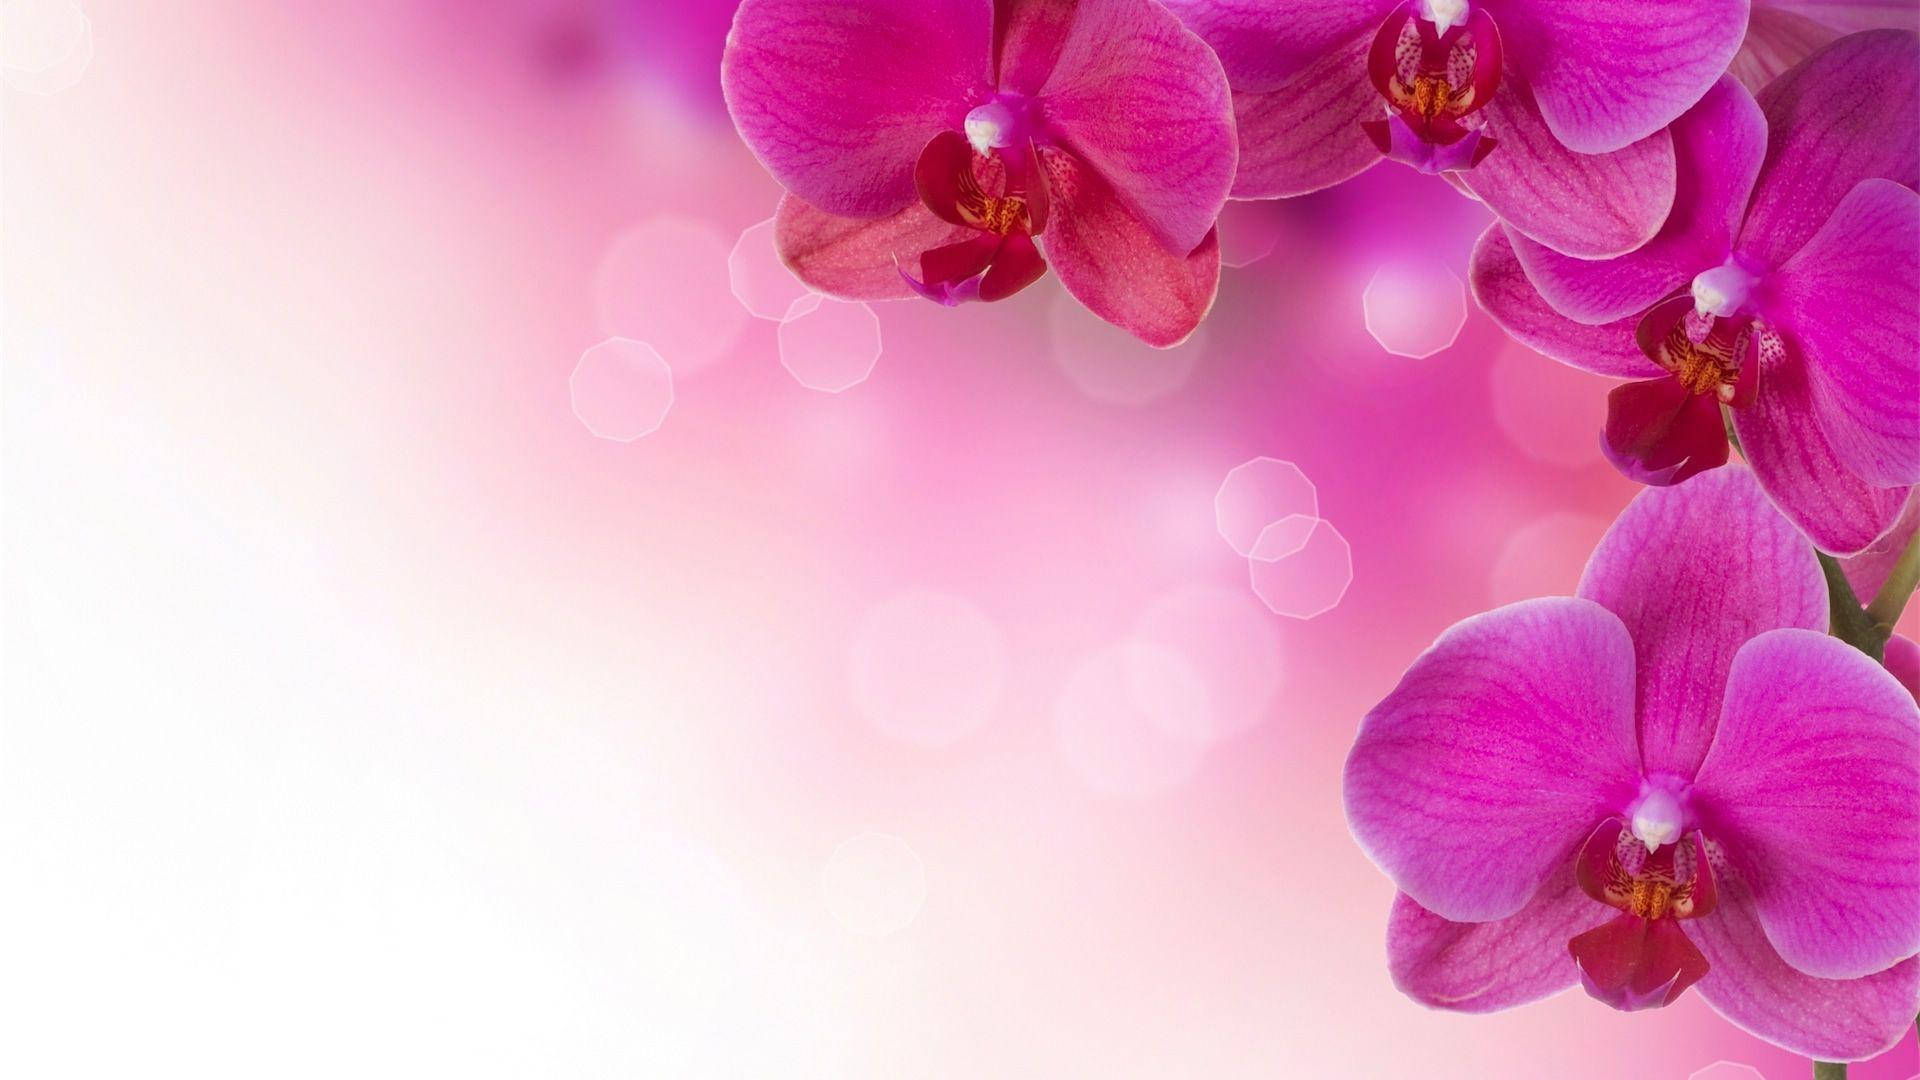 Flower Hd Pink Orchids Wallpaper